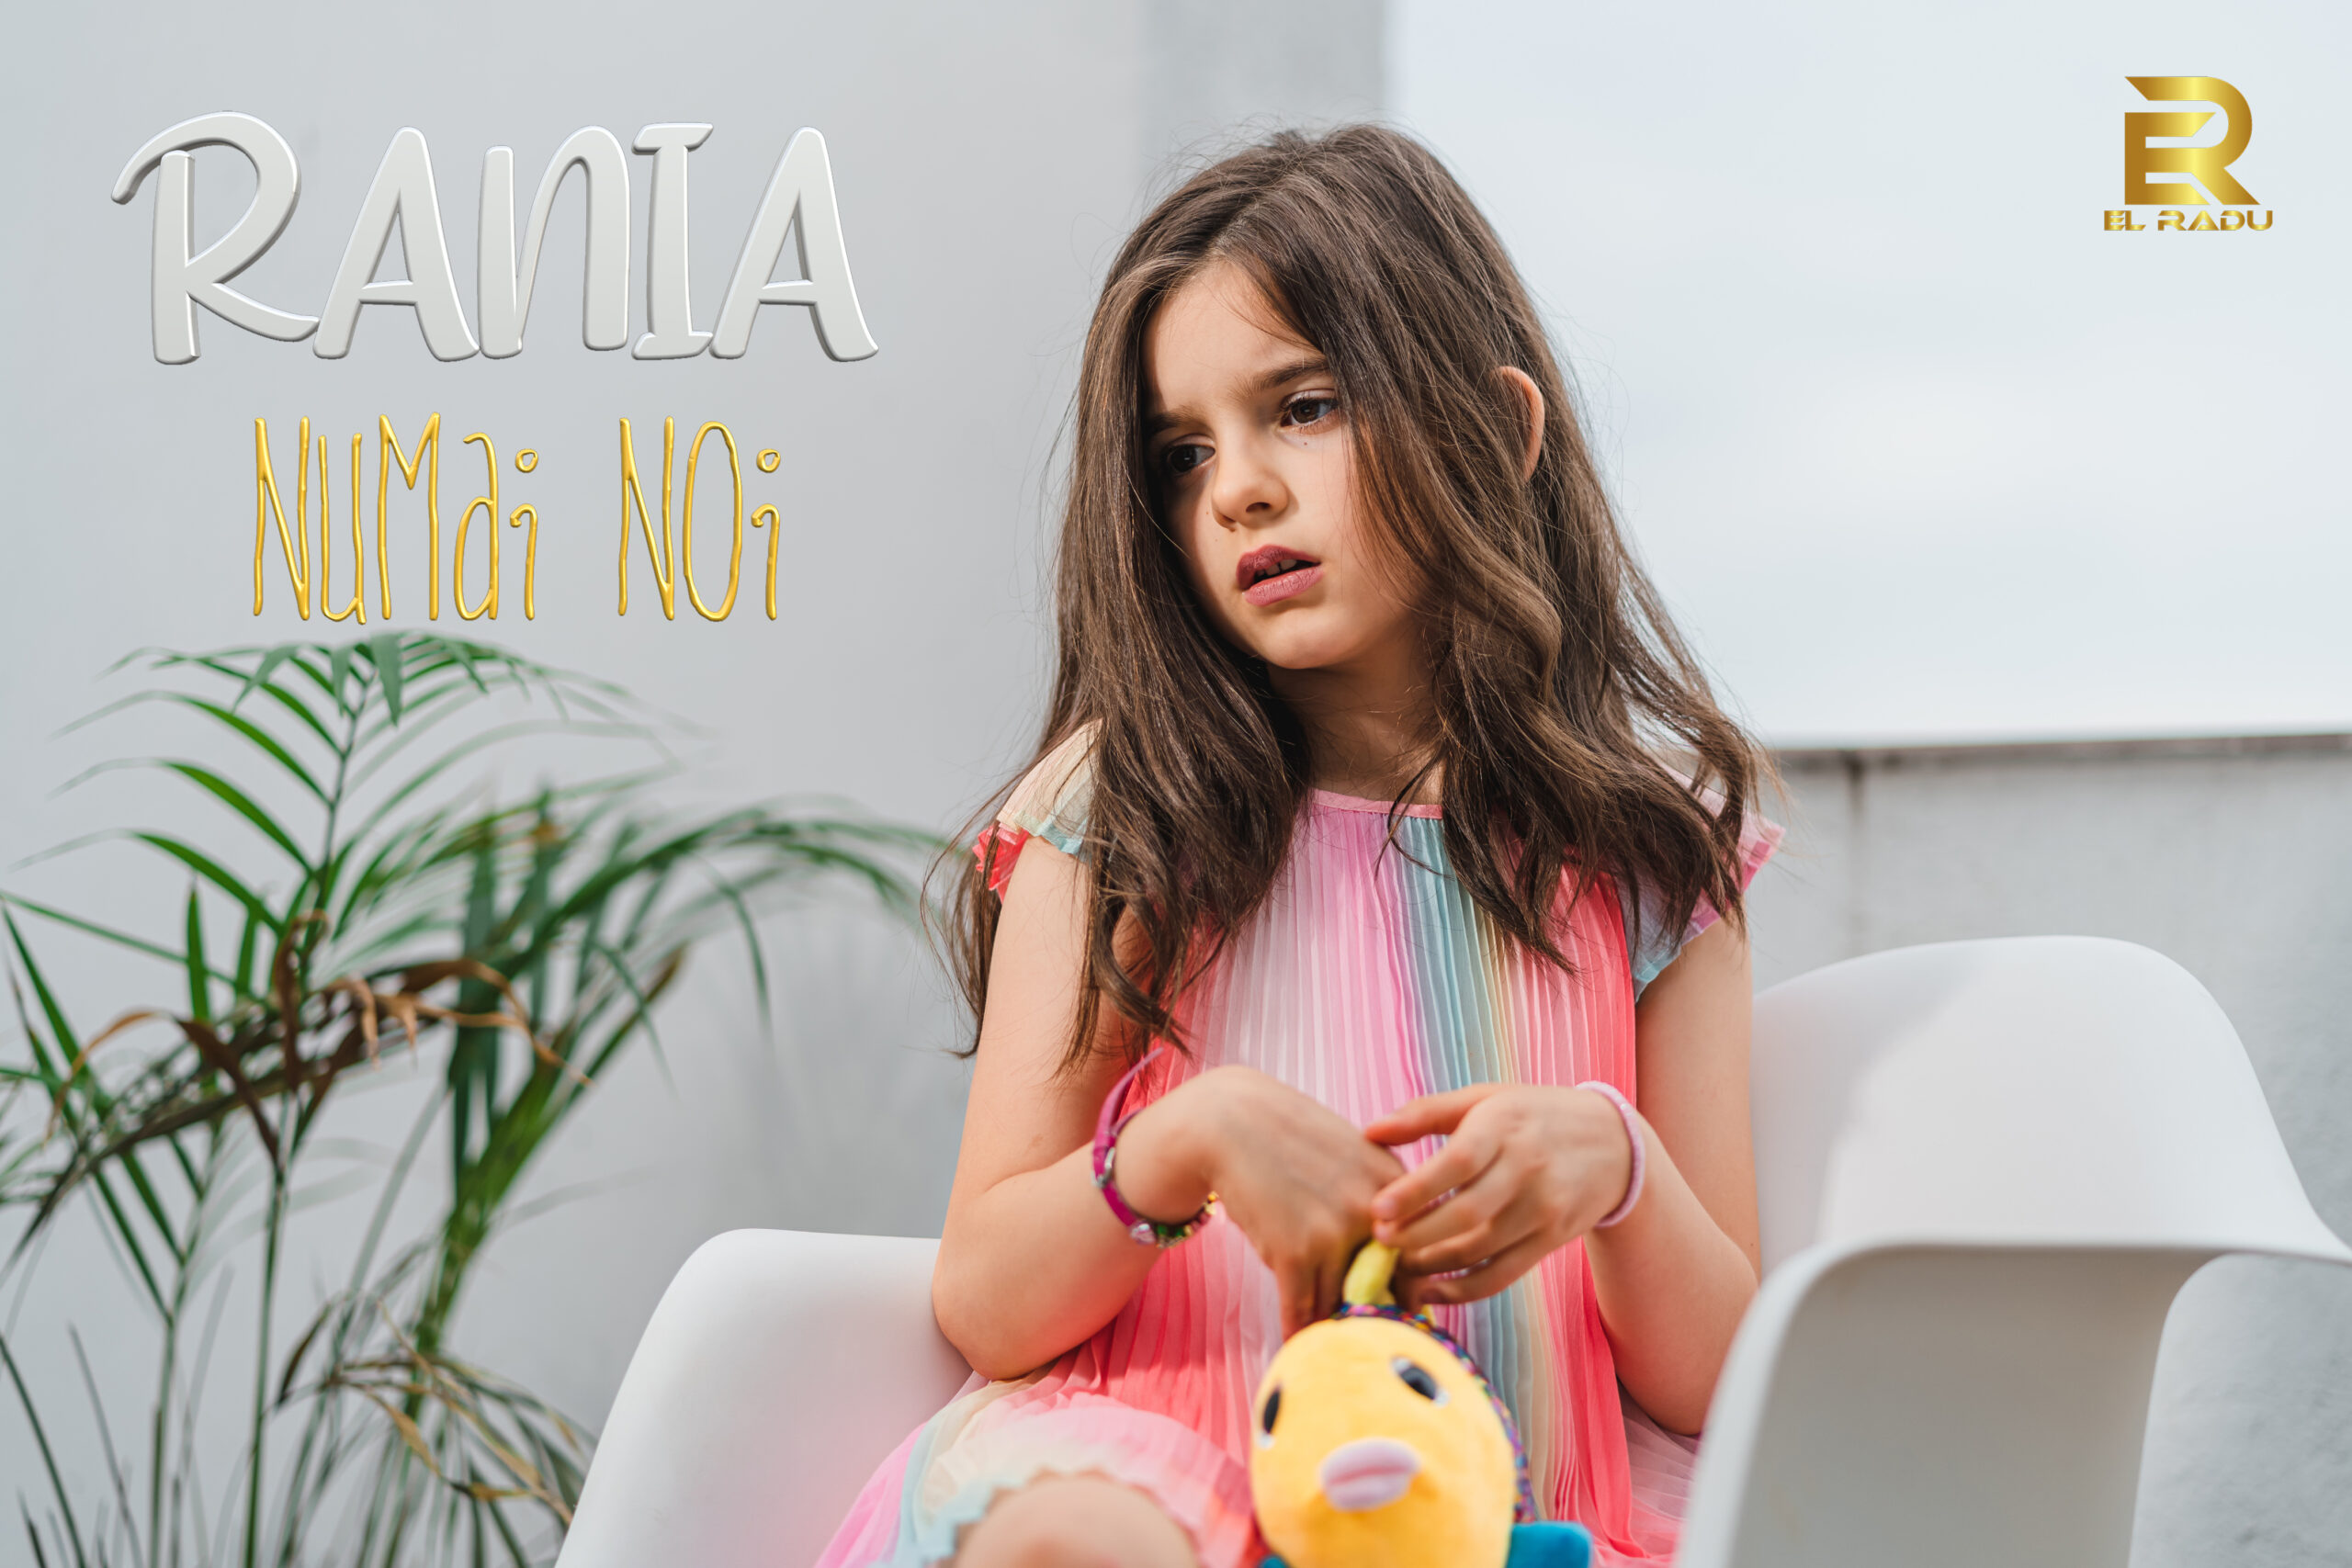 Un nou nume în industria muzicală! Rania se lansează cu melodia “Numai Noi”